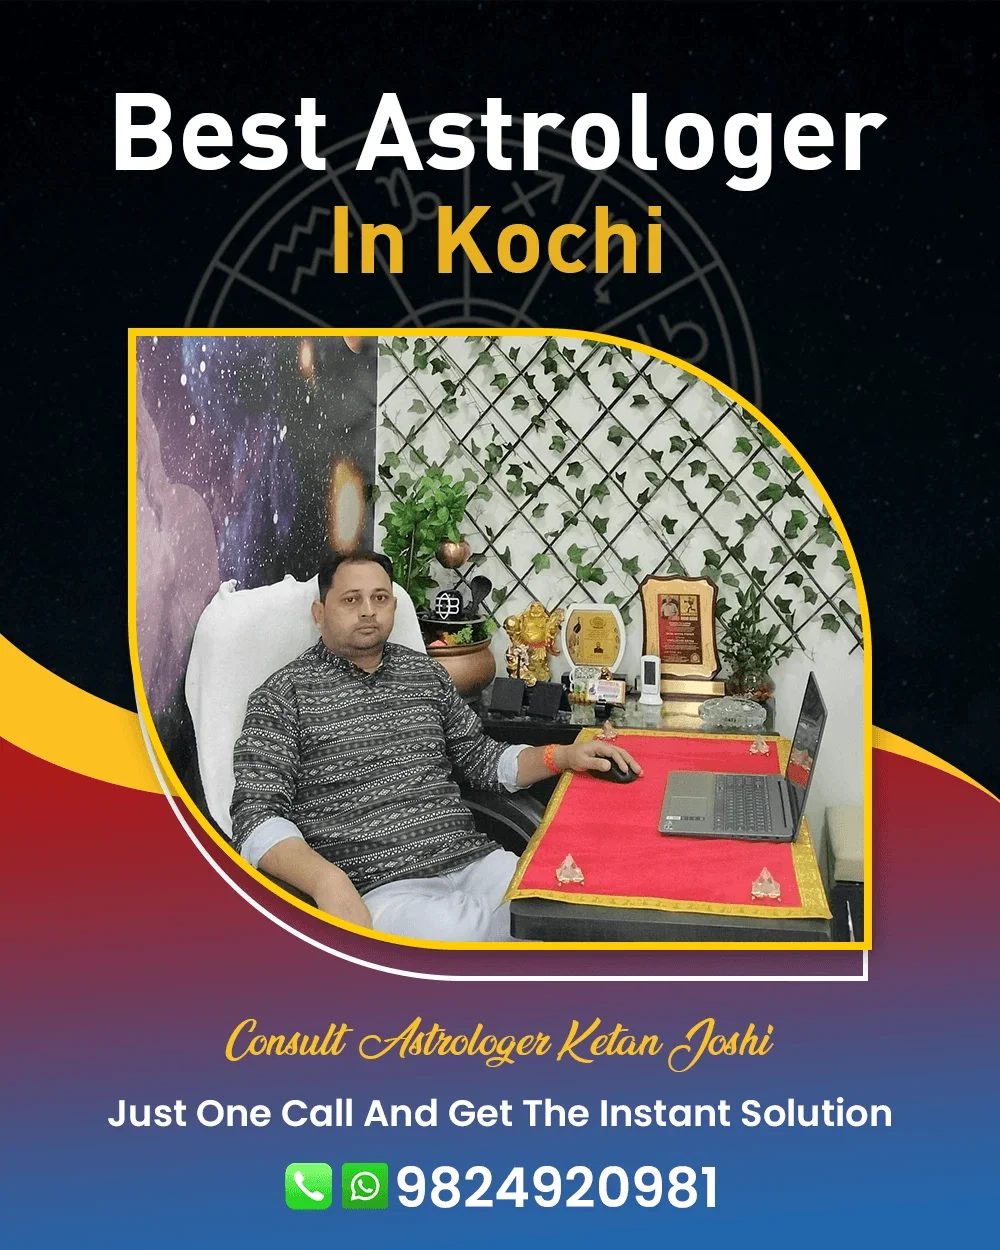 Best Astrologer In Kochi